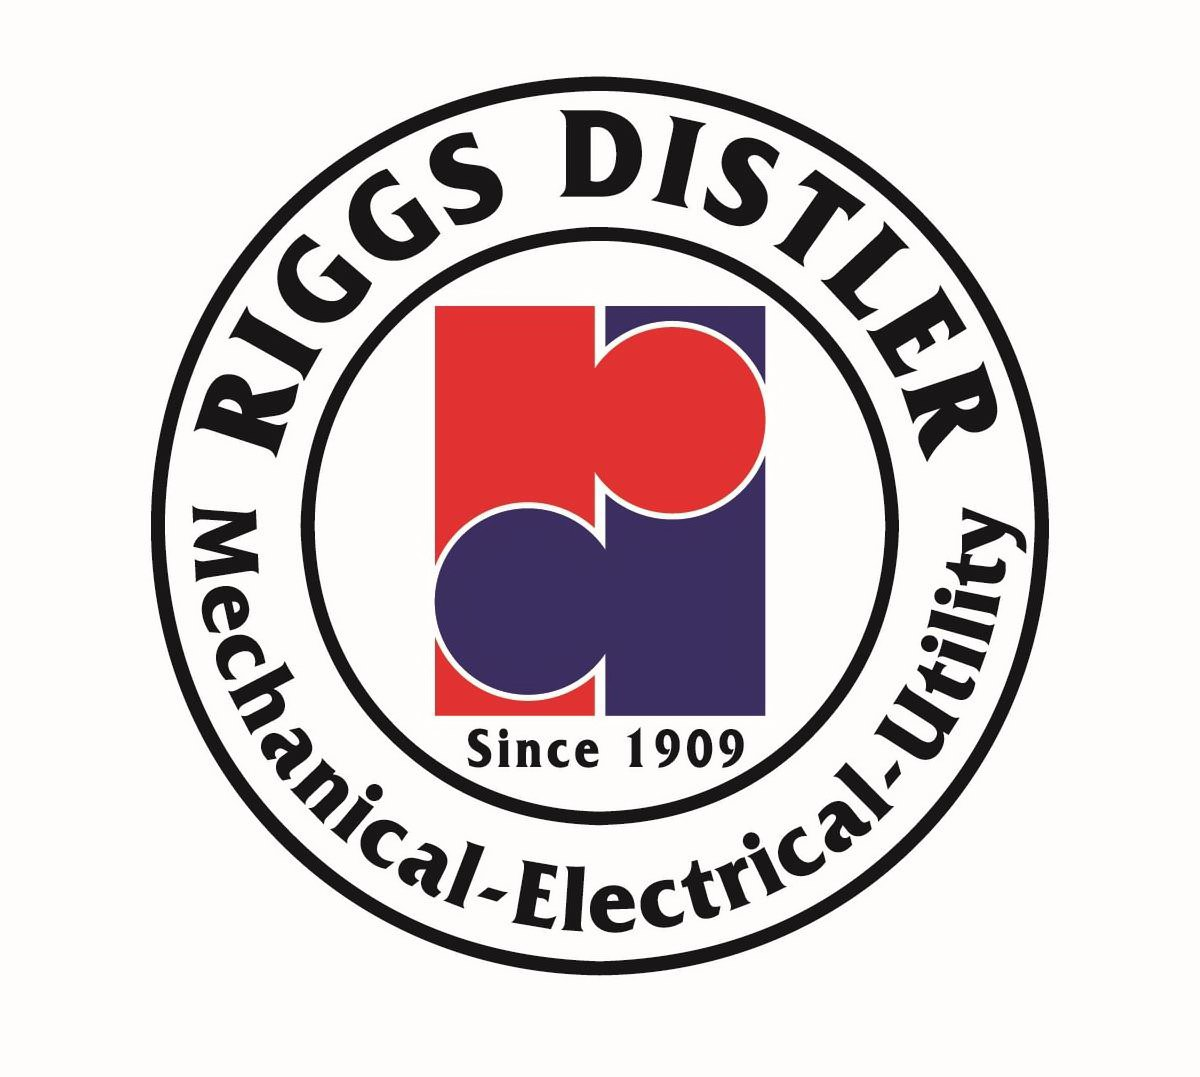 Trademark Logo RIGGS DISTLER MECHANICAL ELECTRICAL UTILITY SINCE 1909